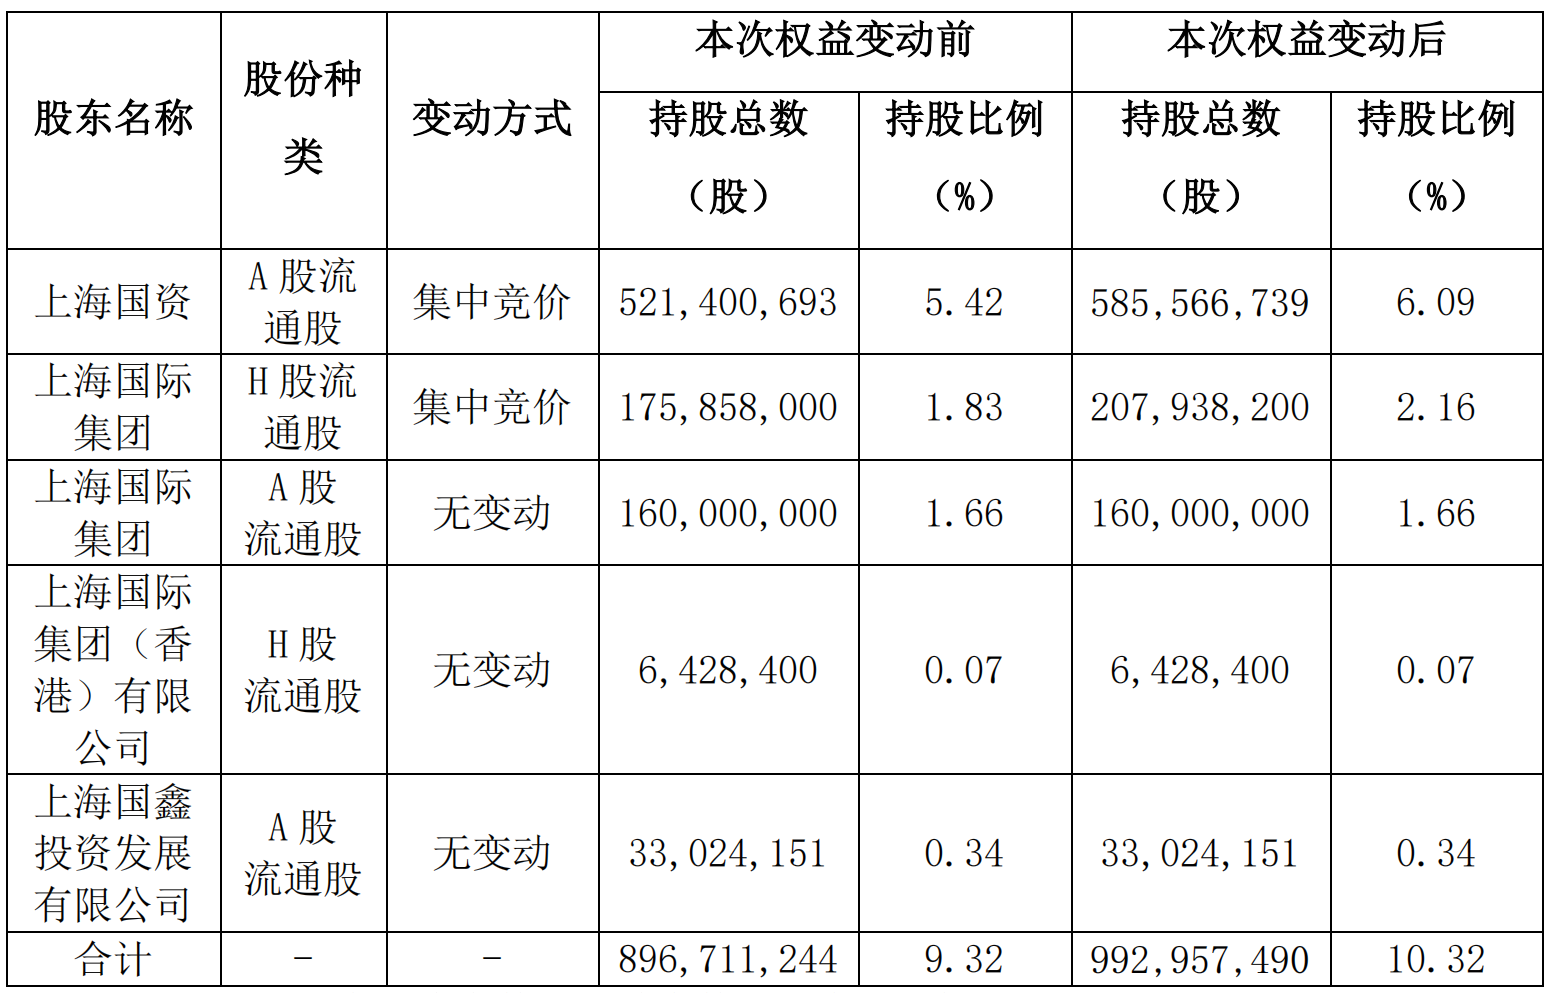 上海國資增持超1% 中國太保發布股東增持公告